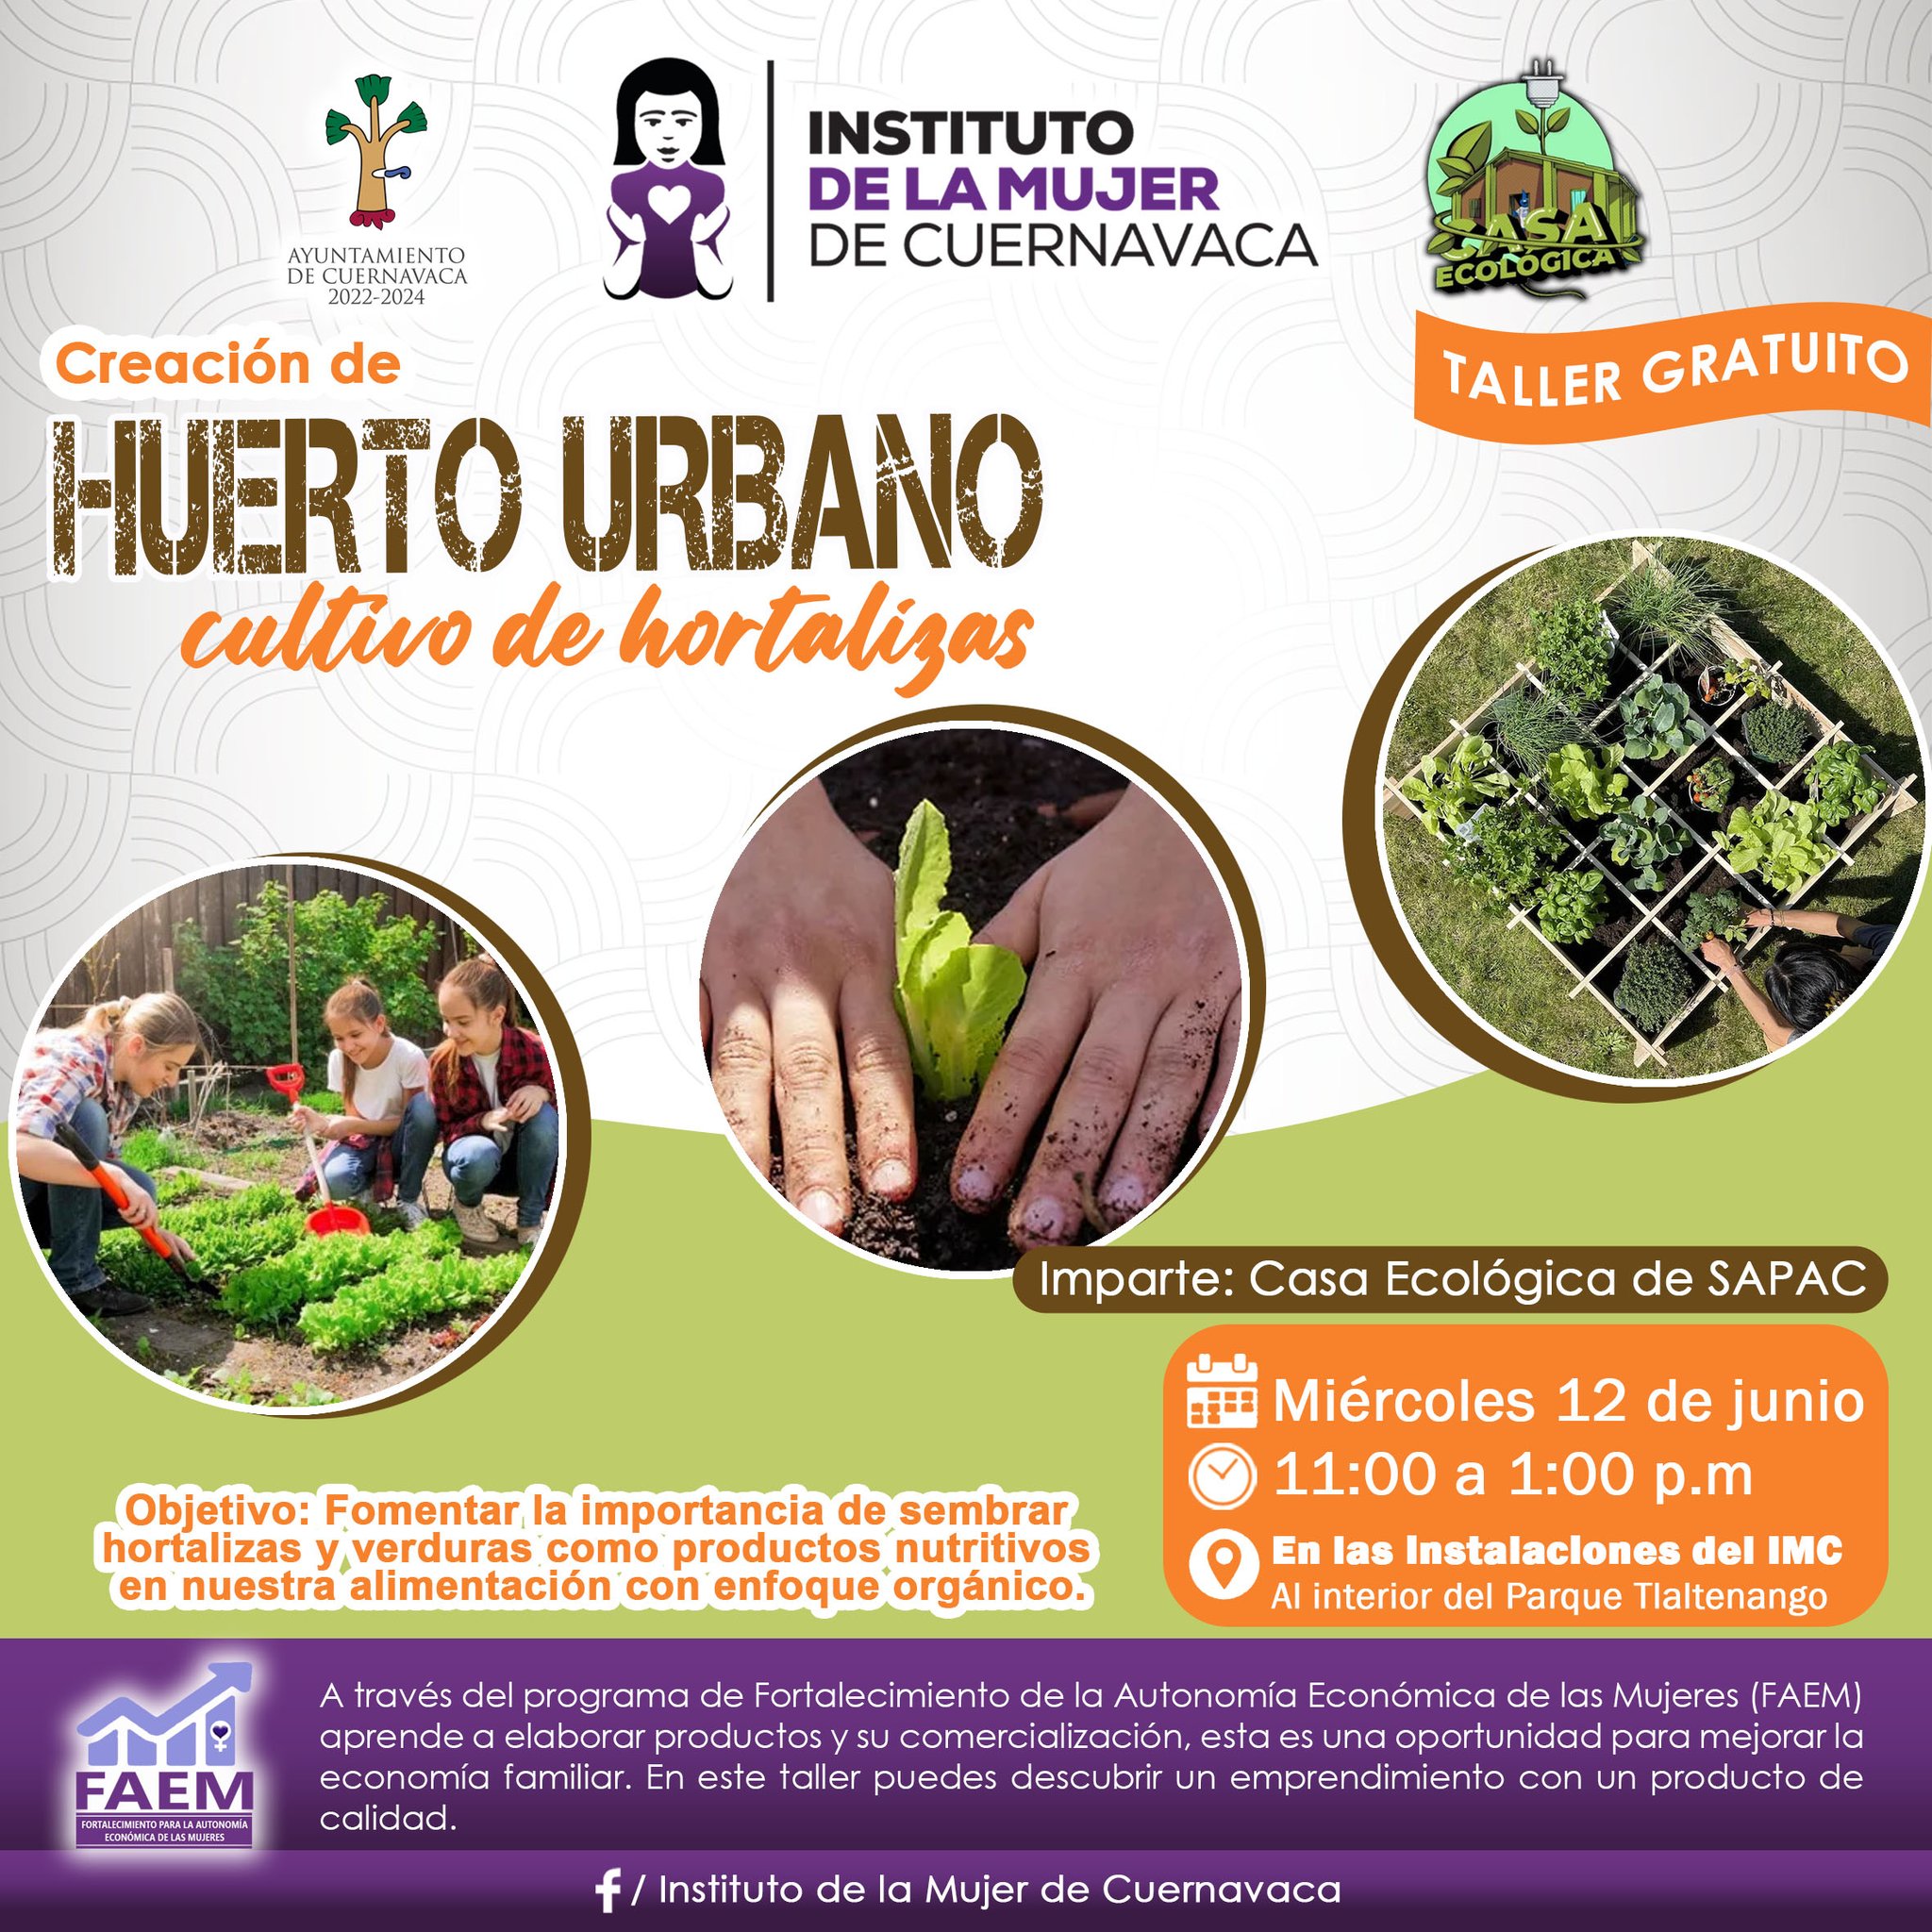 Creación de Huerto Urbano: Cultivo de Hortalizas - Instituto de la Mujer de Cuernavaca